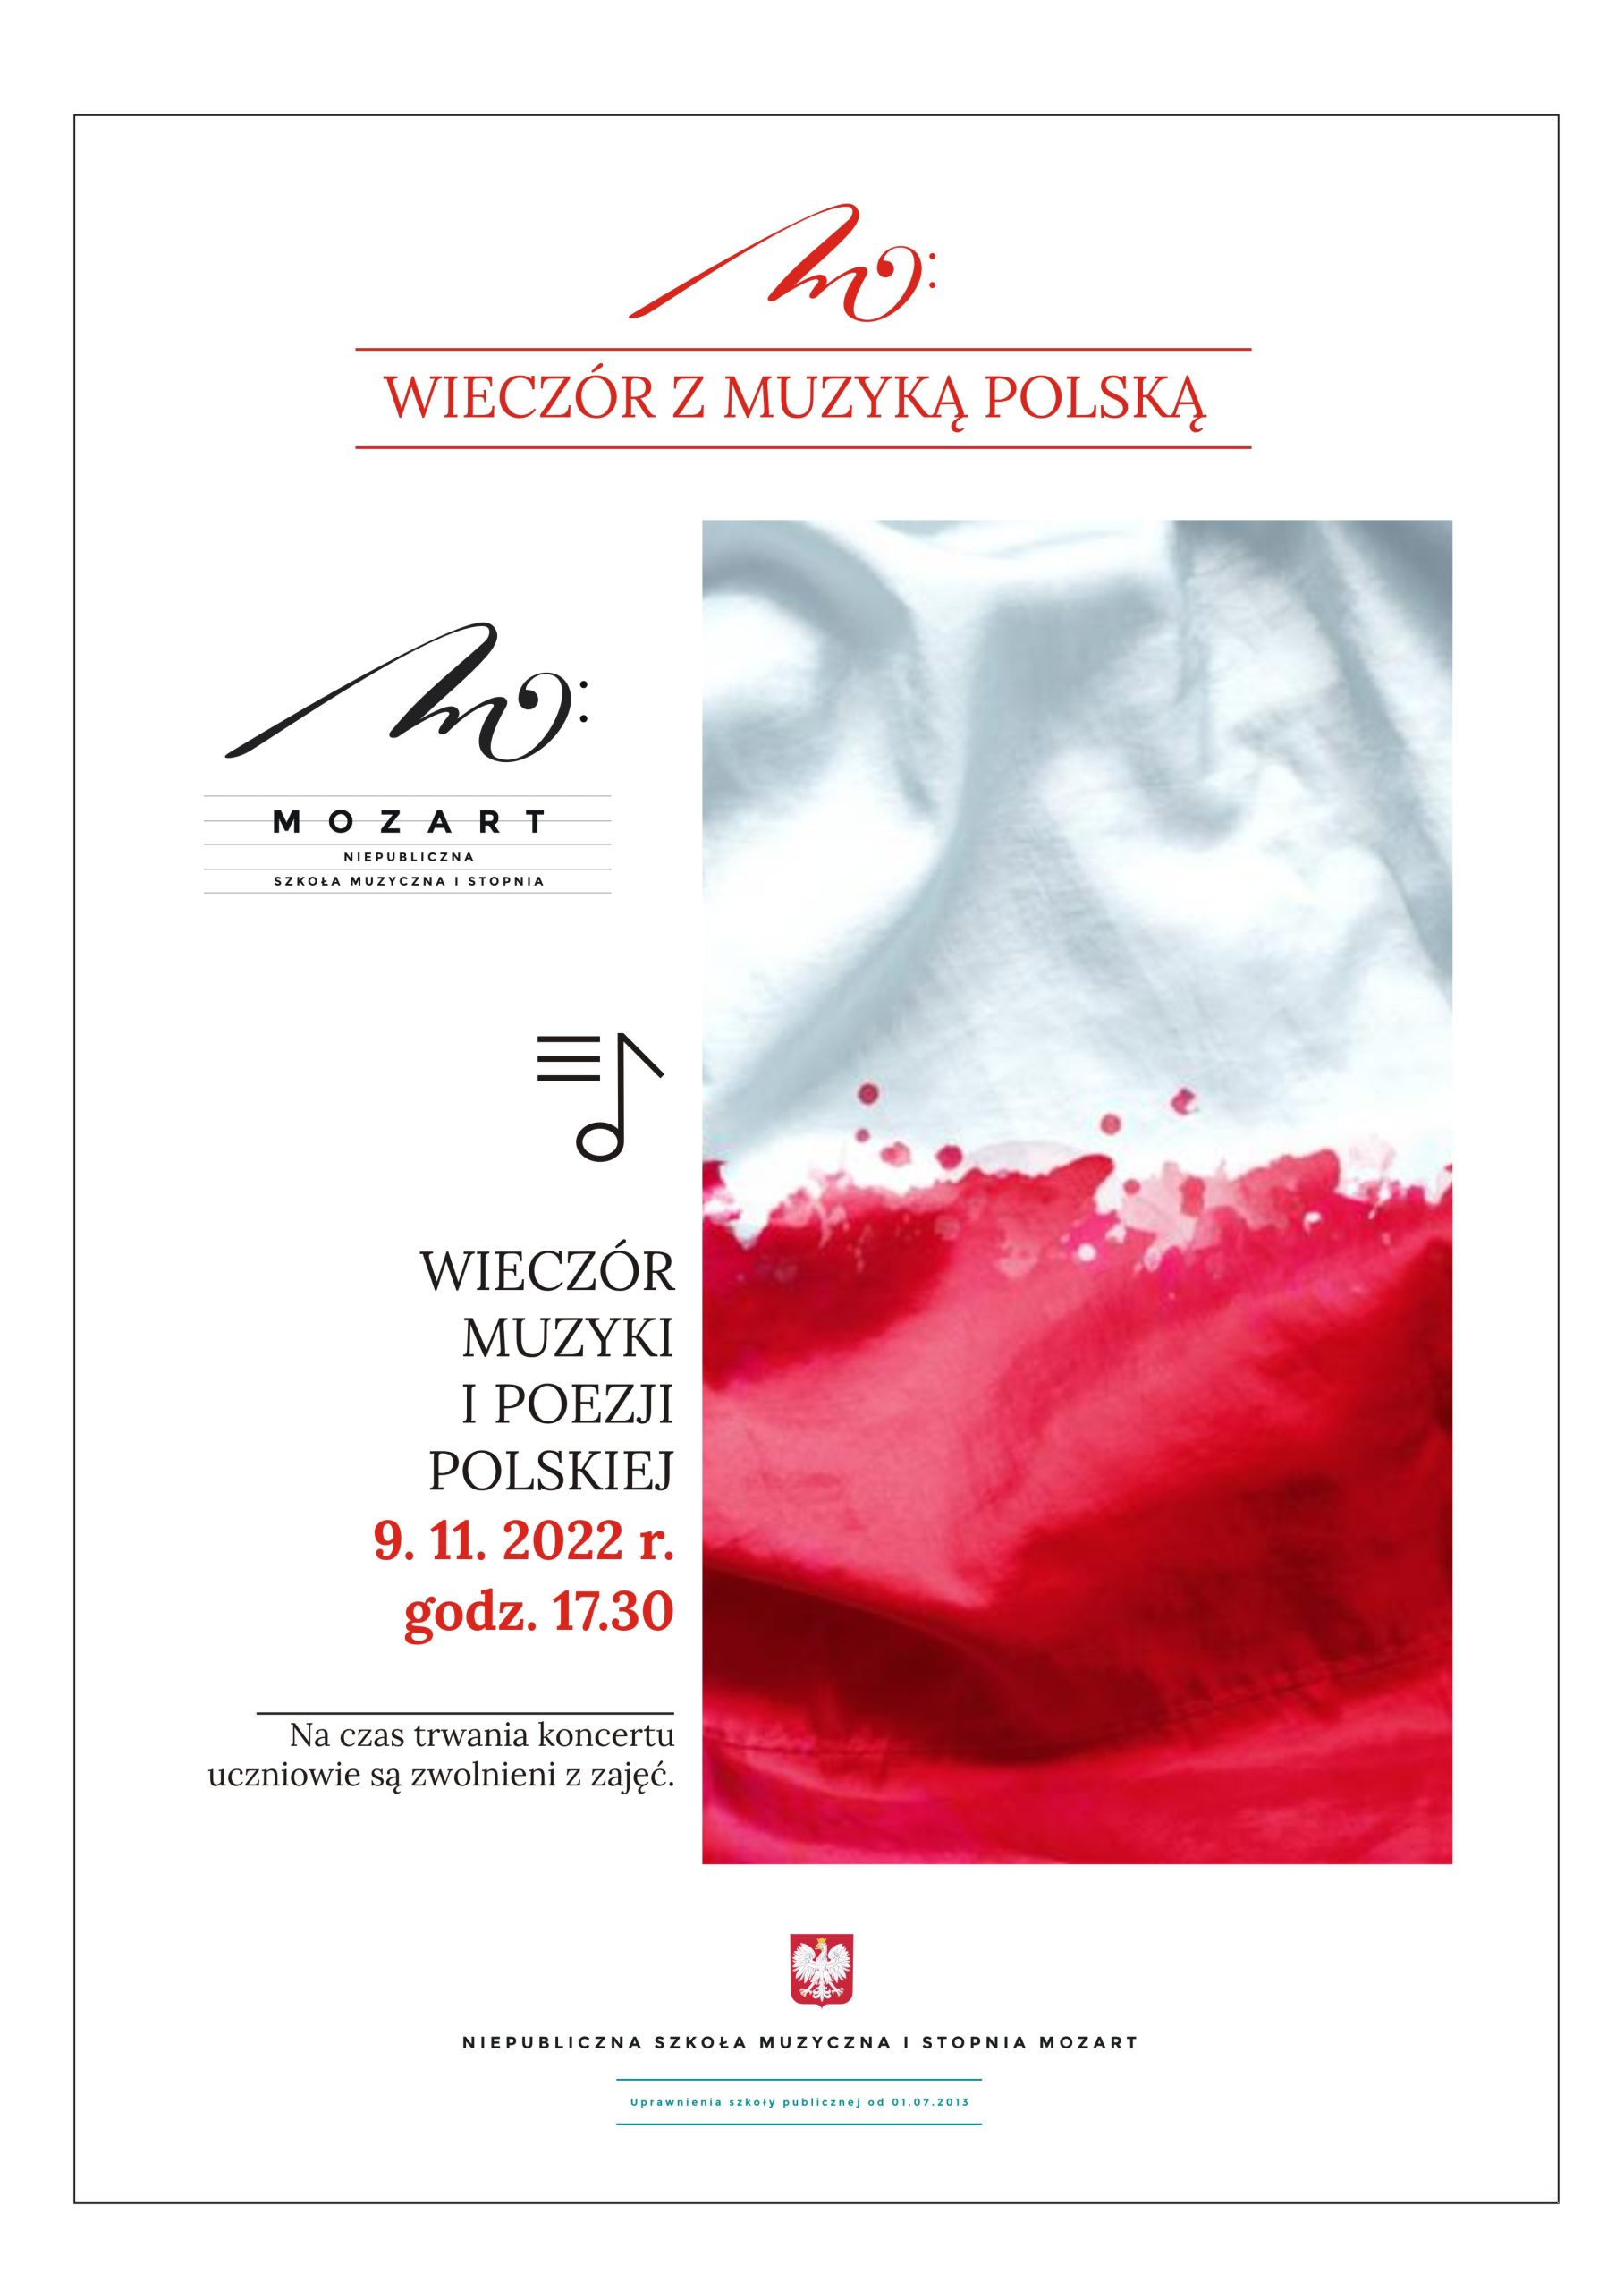 Wieczór muzyki i poezji polskiej